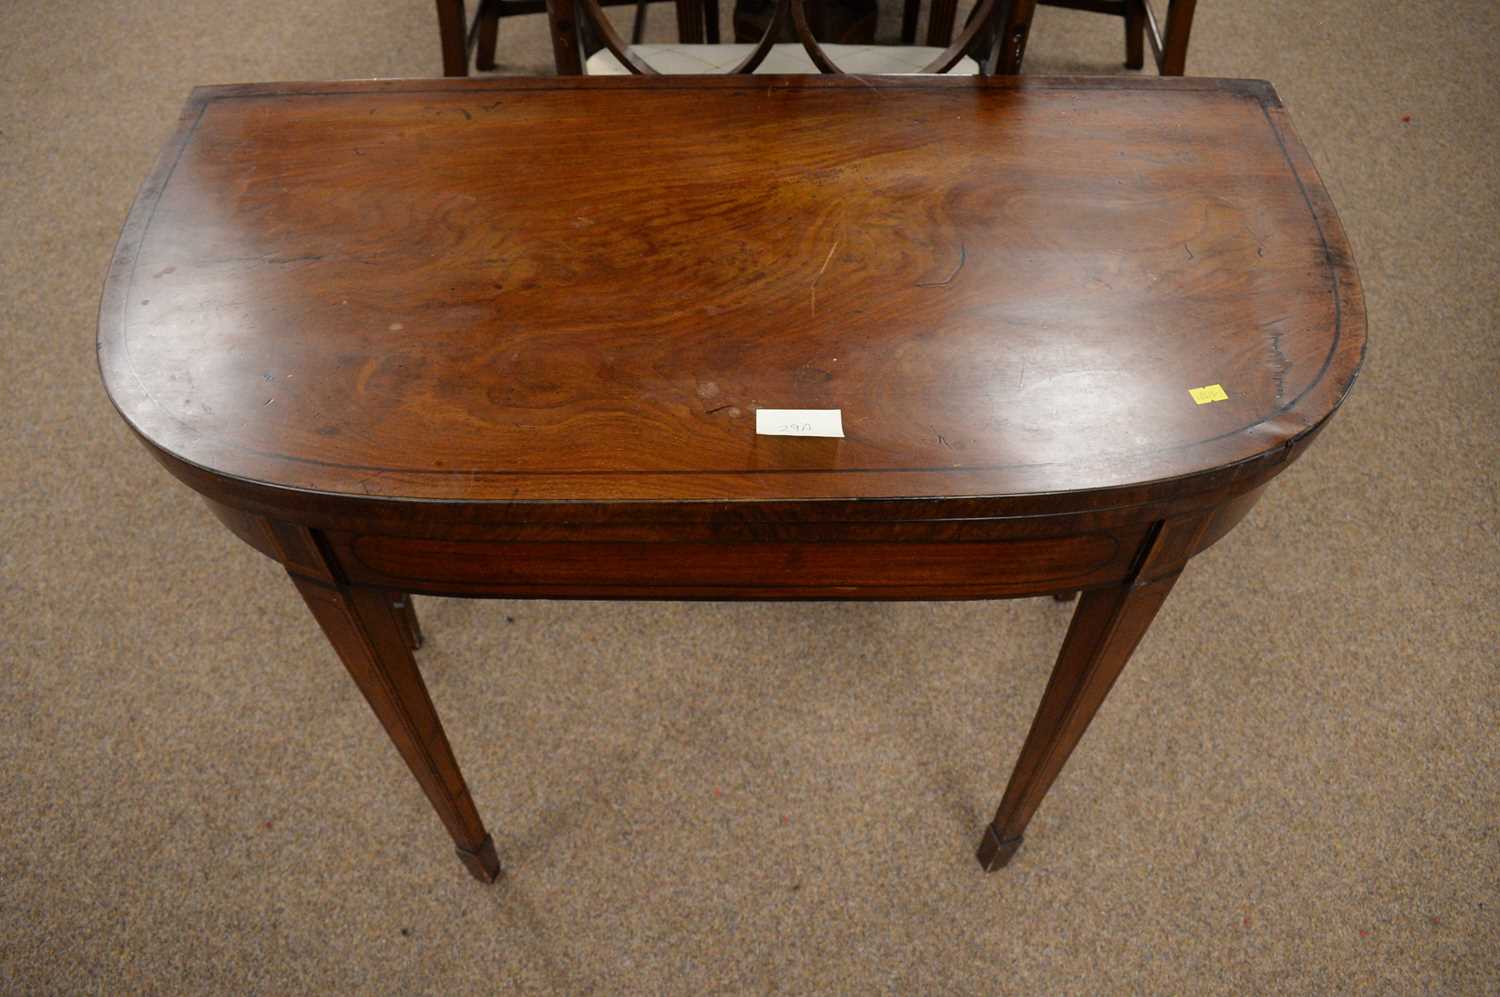 Lot 29 - A 19th Century mahogany and ebony lined card table